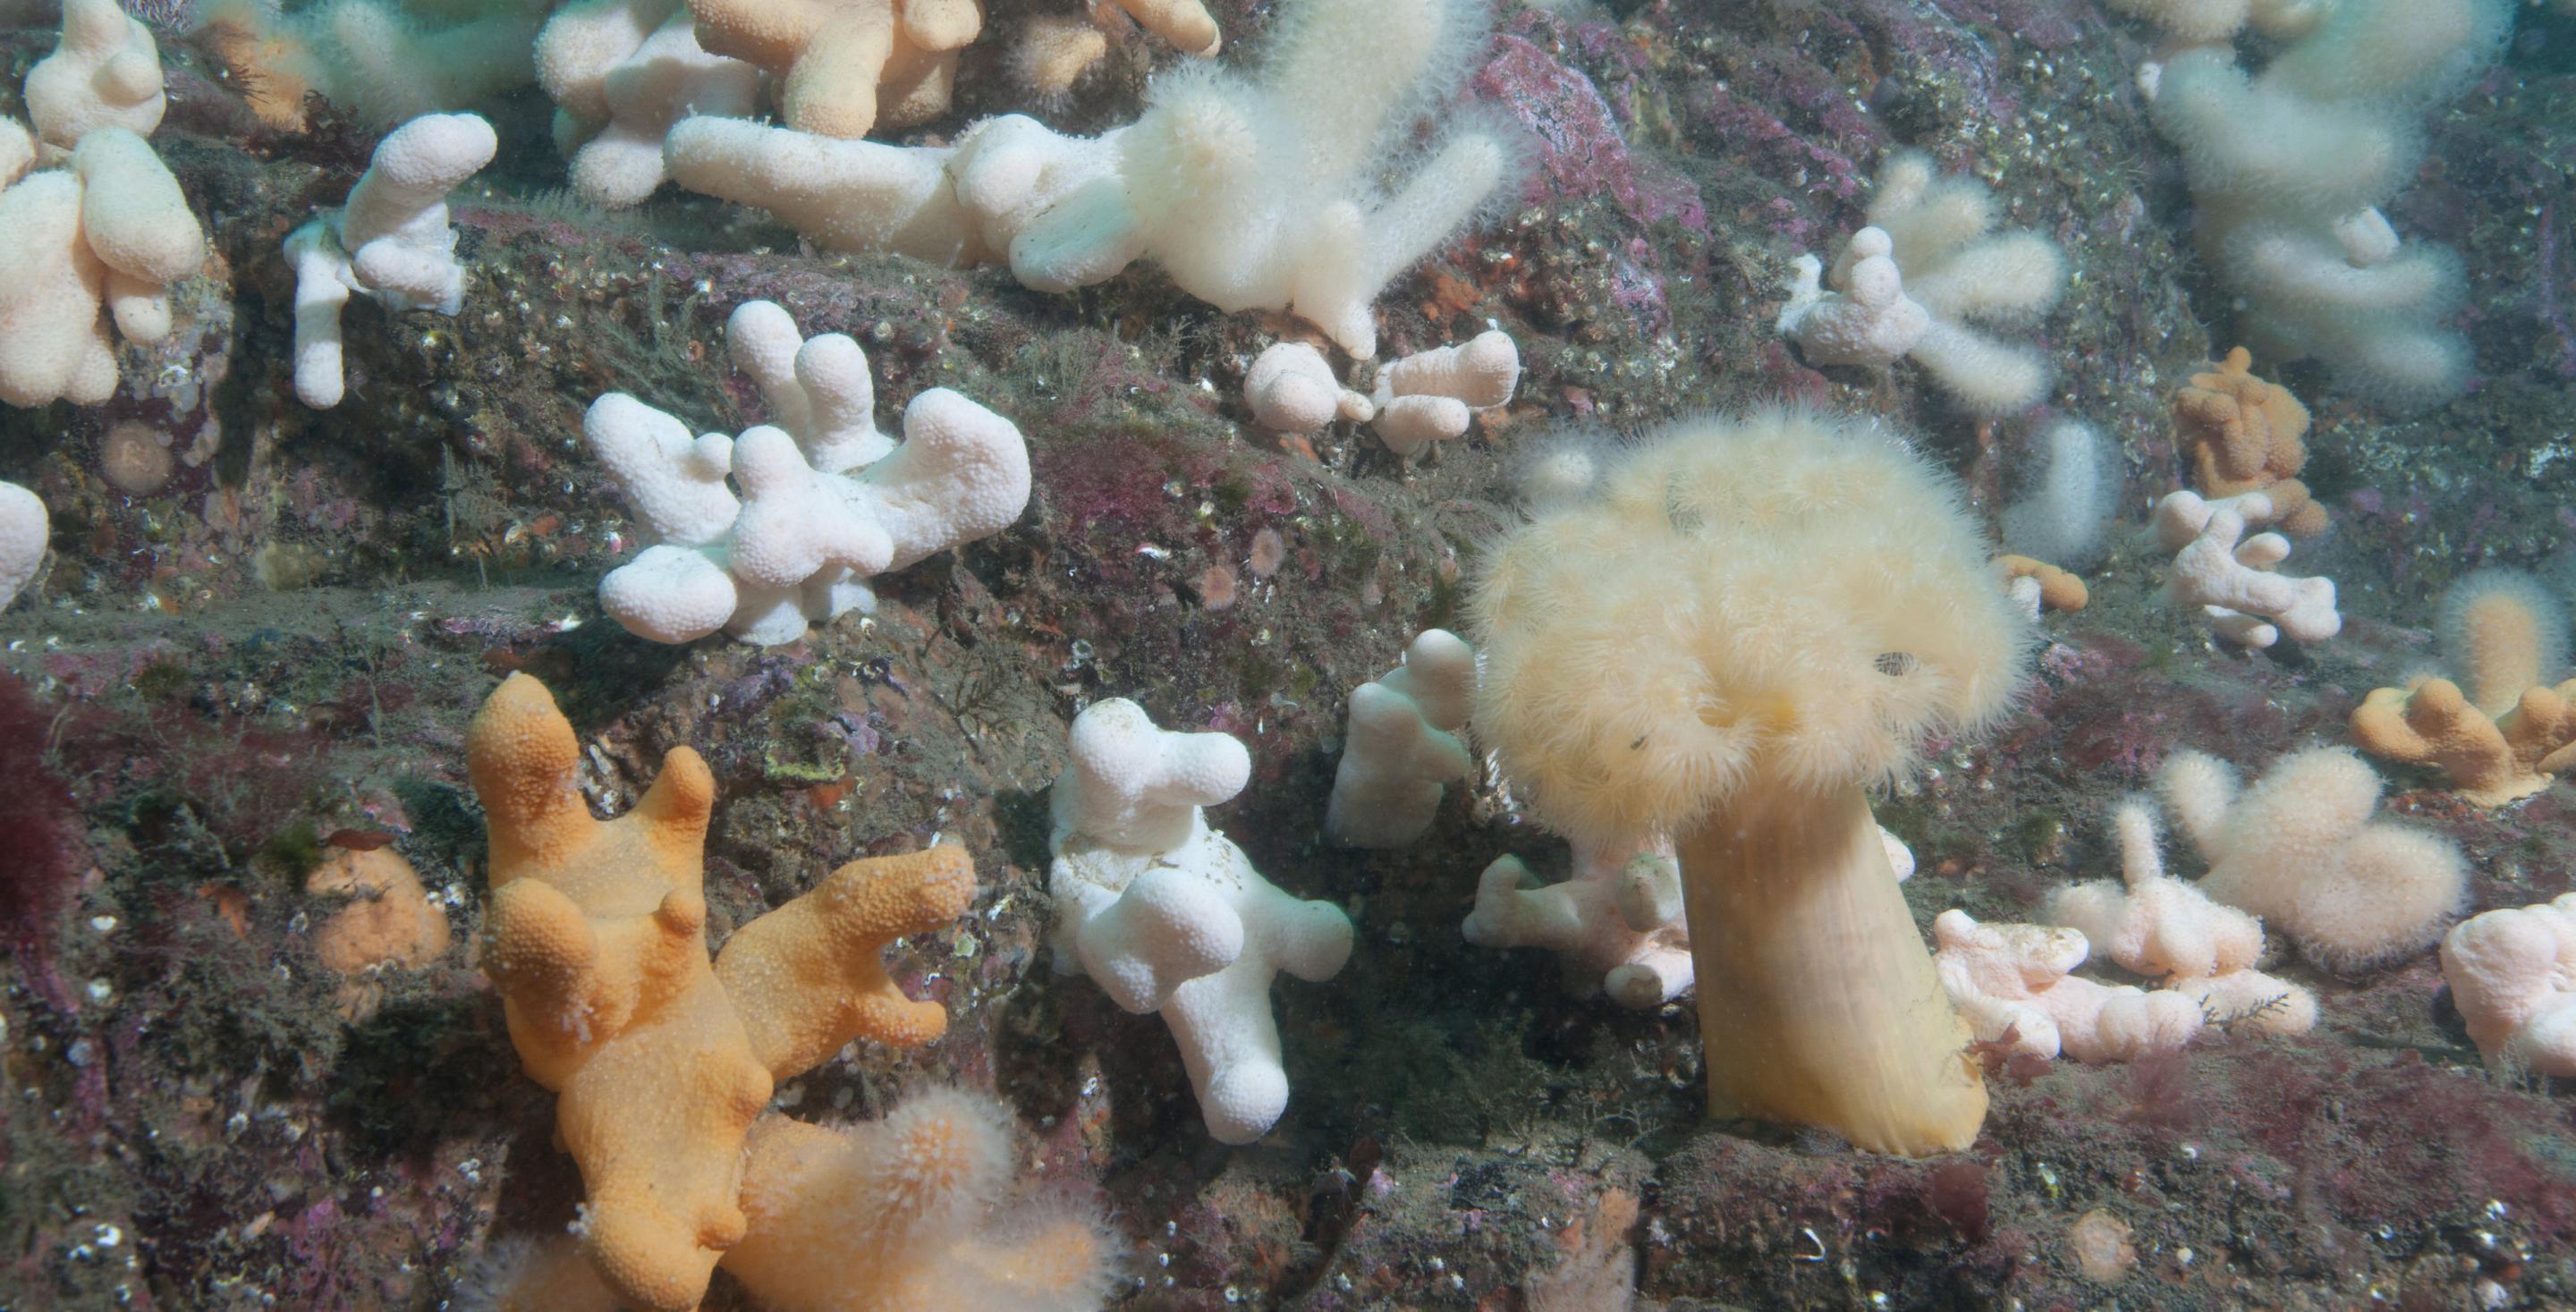 La plongée en eau froide est particulièrement colorée - Plongée aux iles de Farne - Angleterre